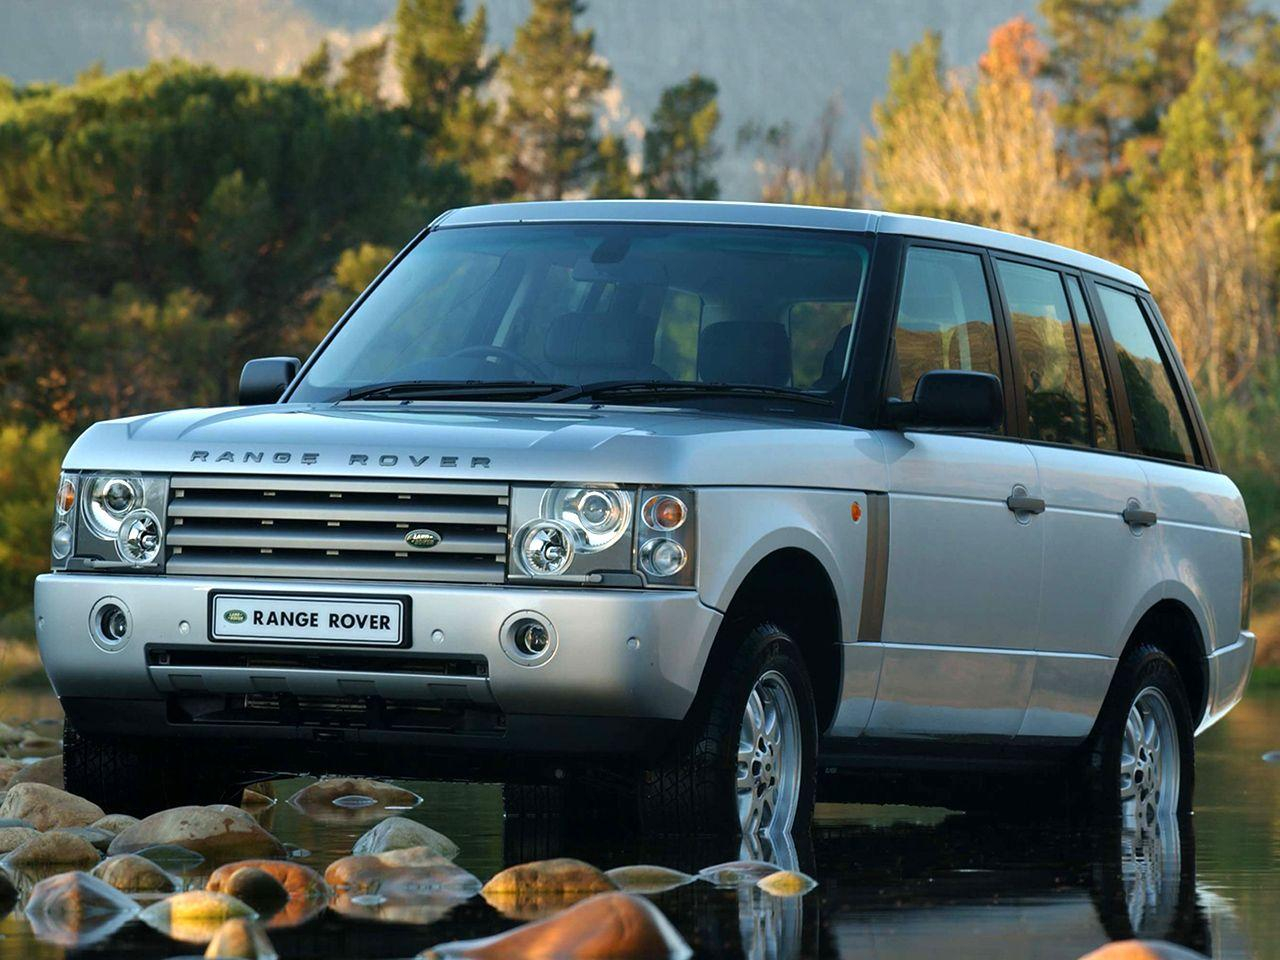 Рендж ровер 3 литра. Range Rover l322. Range Rover l322 2002. Range Rover 3 l322. Range Rover 2002.